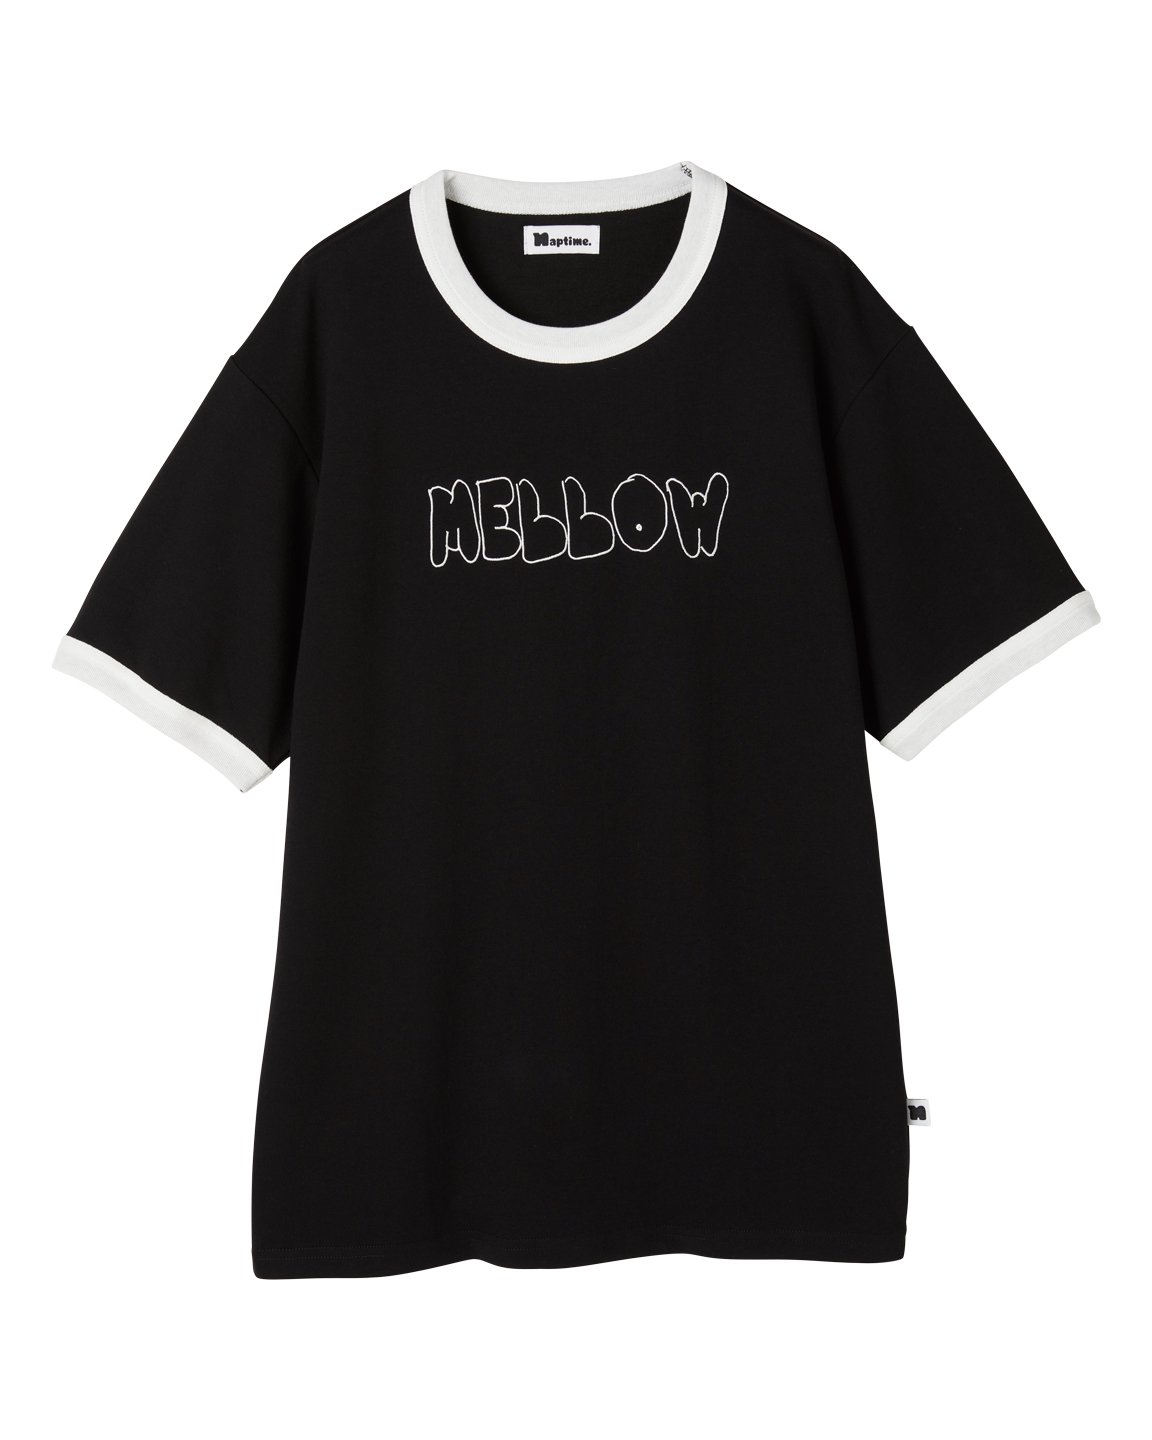 カテゴリ Naptime. の通販 by hhiiii's shop｜ラクマ 刺繍 Tシャツ 